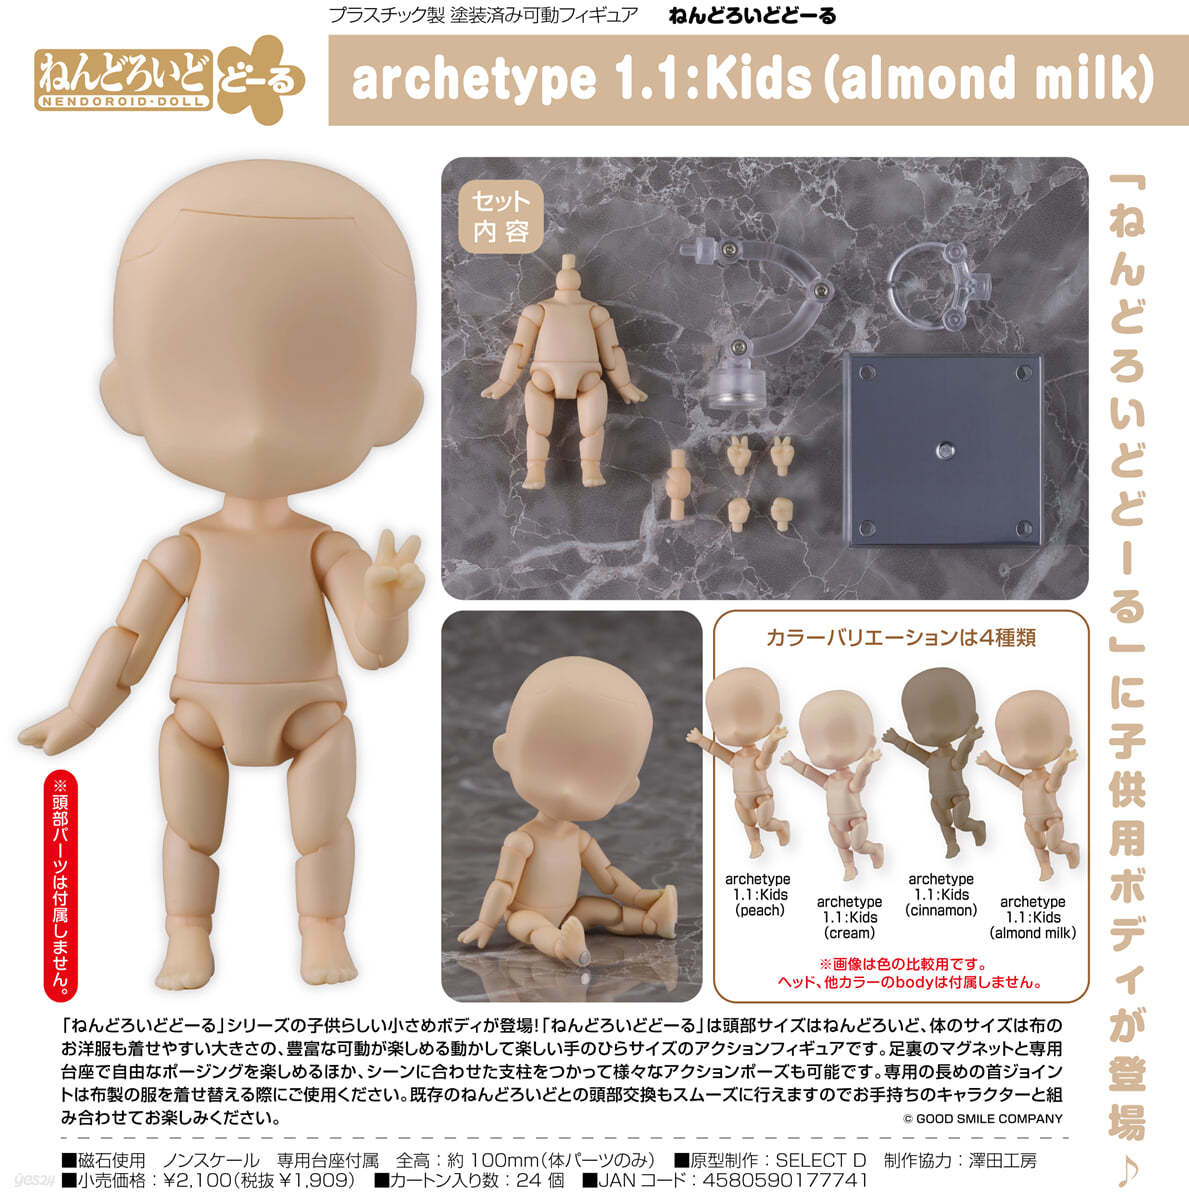 ねんどろいどど-る archetype 1.1:Kids(almond milk)